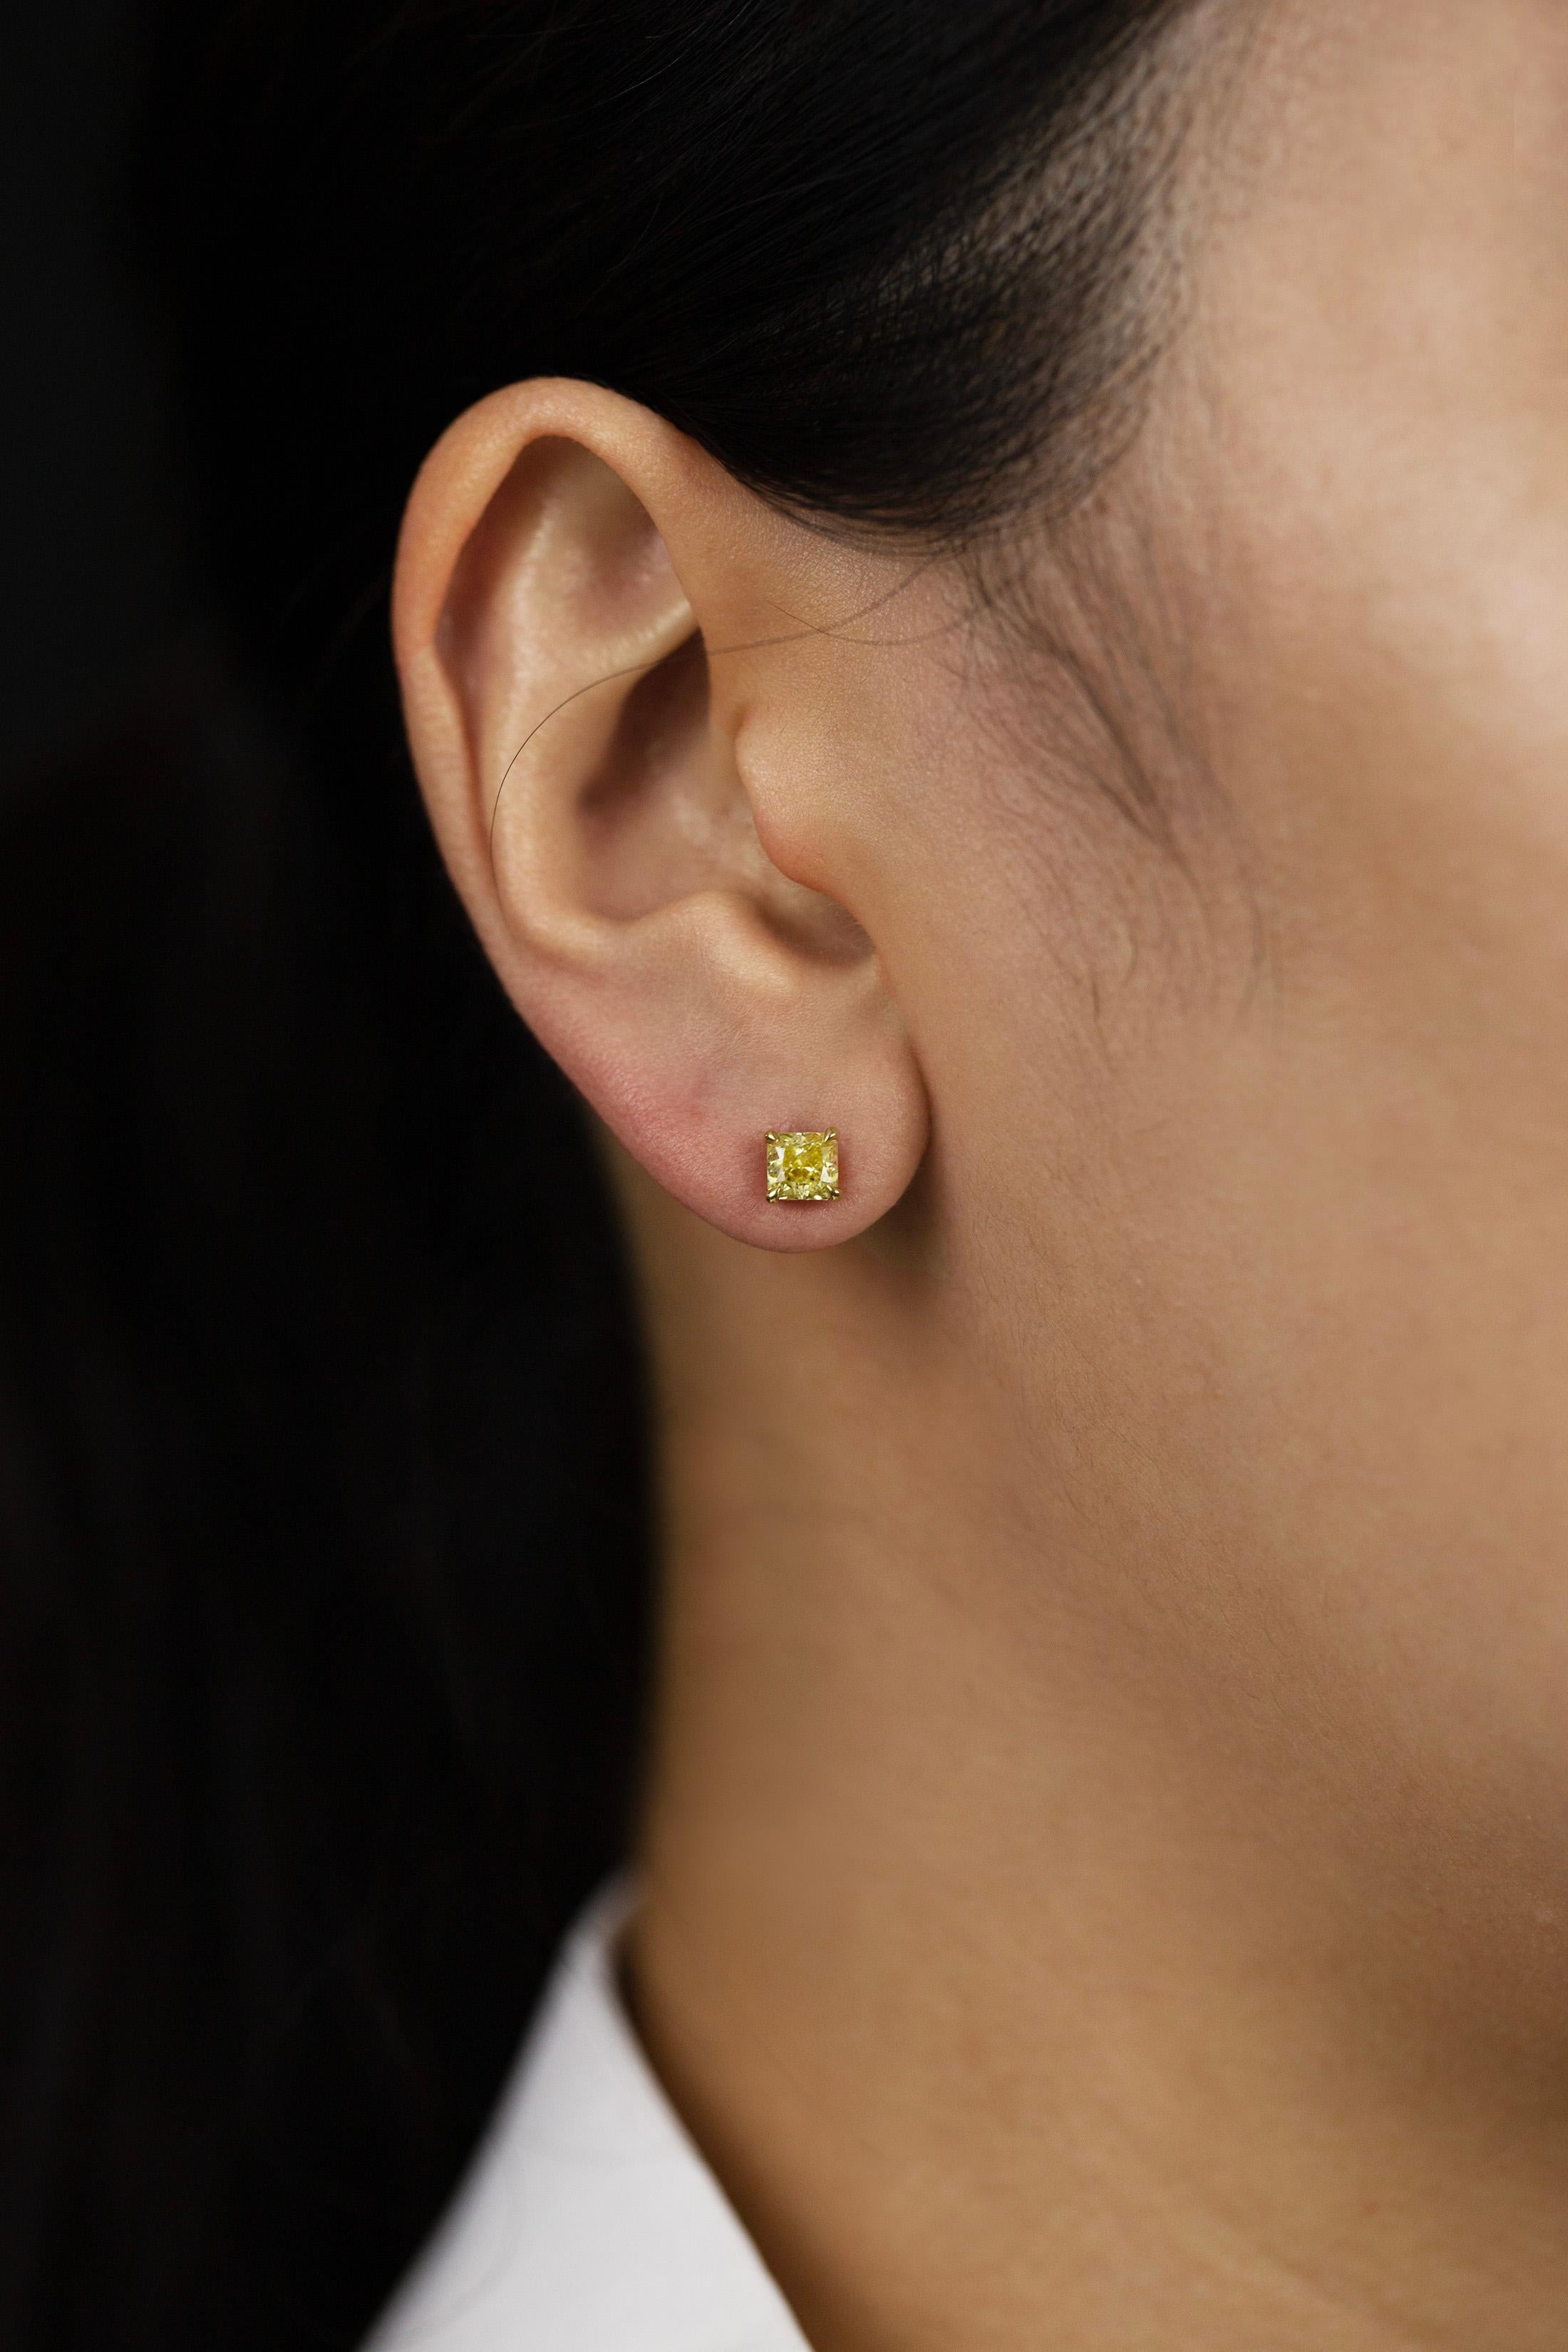 Women's GIA Certified 1.15 Carats Total Radiant Cut Fancy Yellow Diamond Stud Earrings For Sale